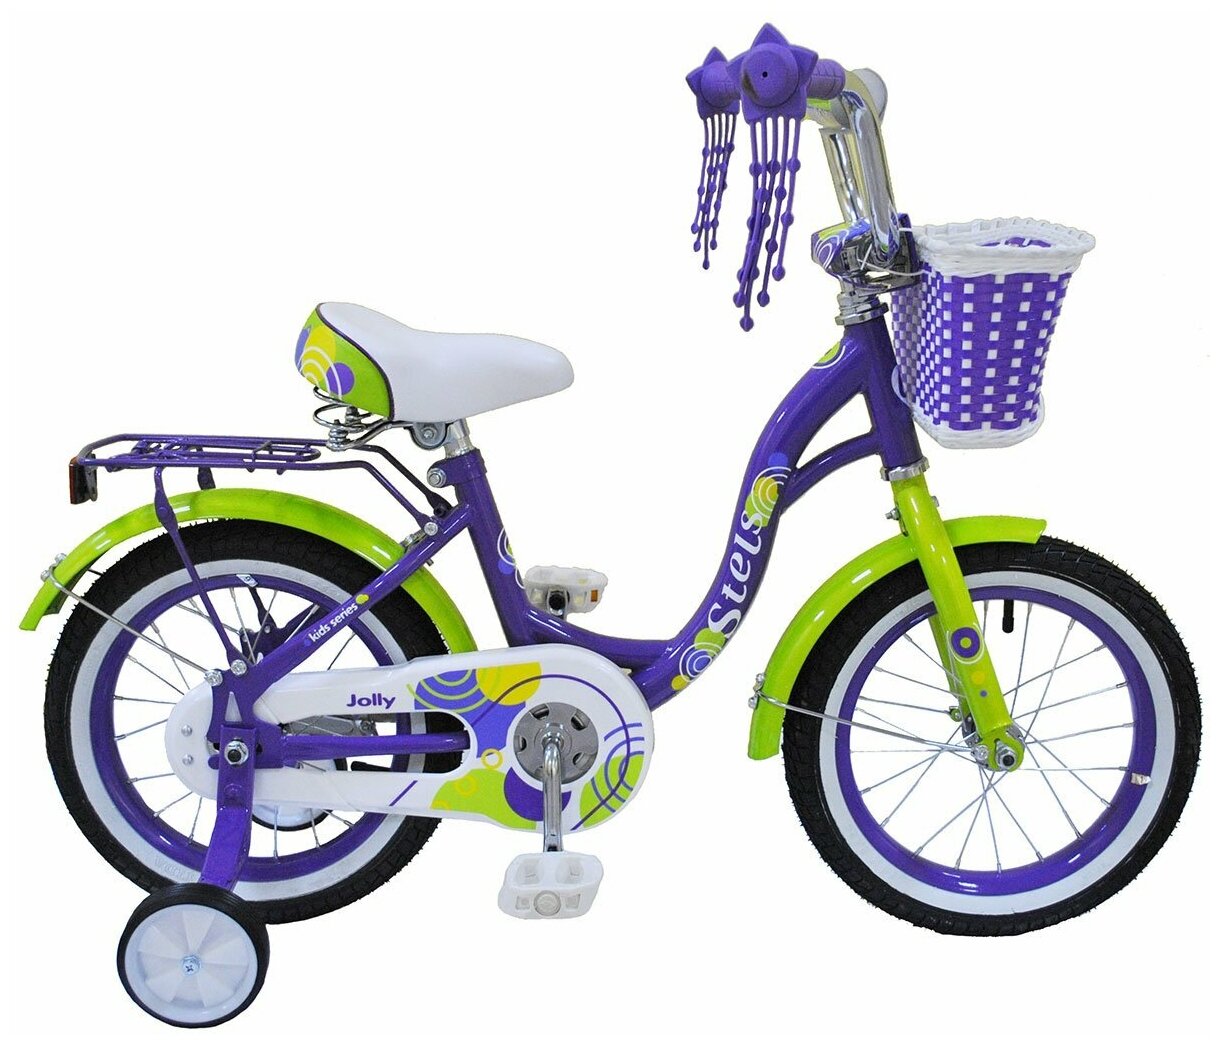 Детский велосипед STELS Jolly 14 V010 (2019) фиолетовый 9.5" (требует финальной сборки)